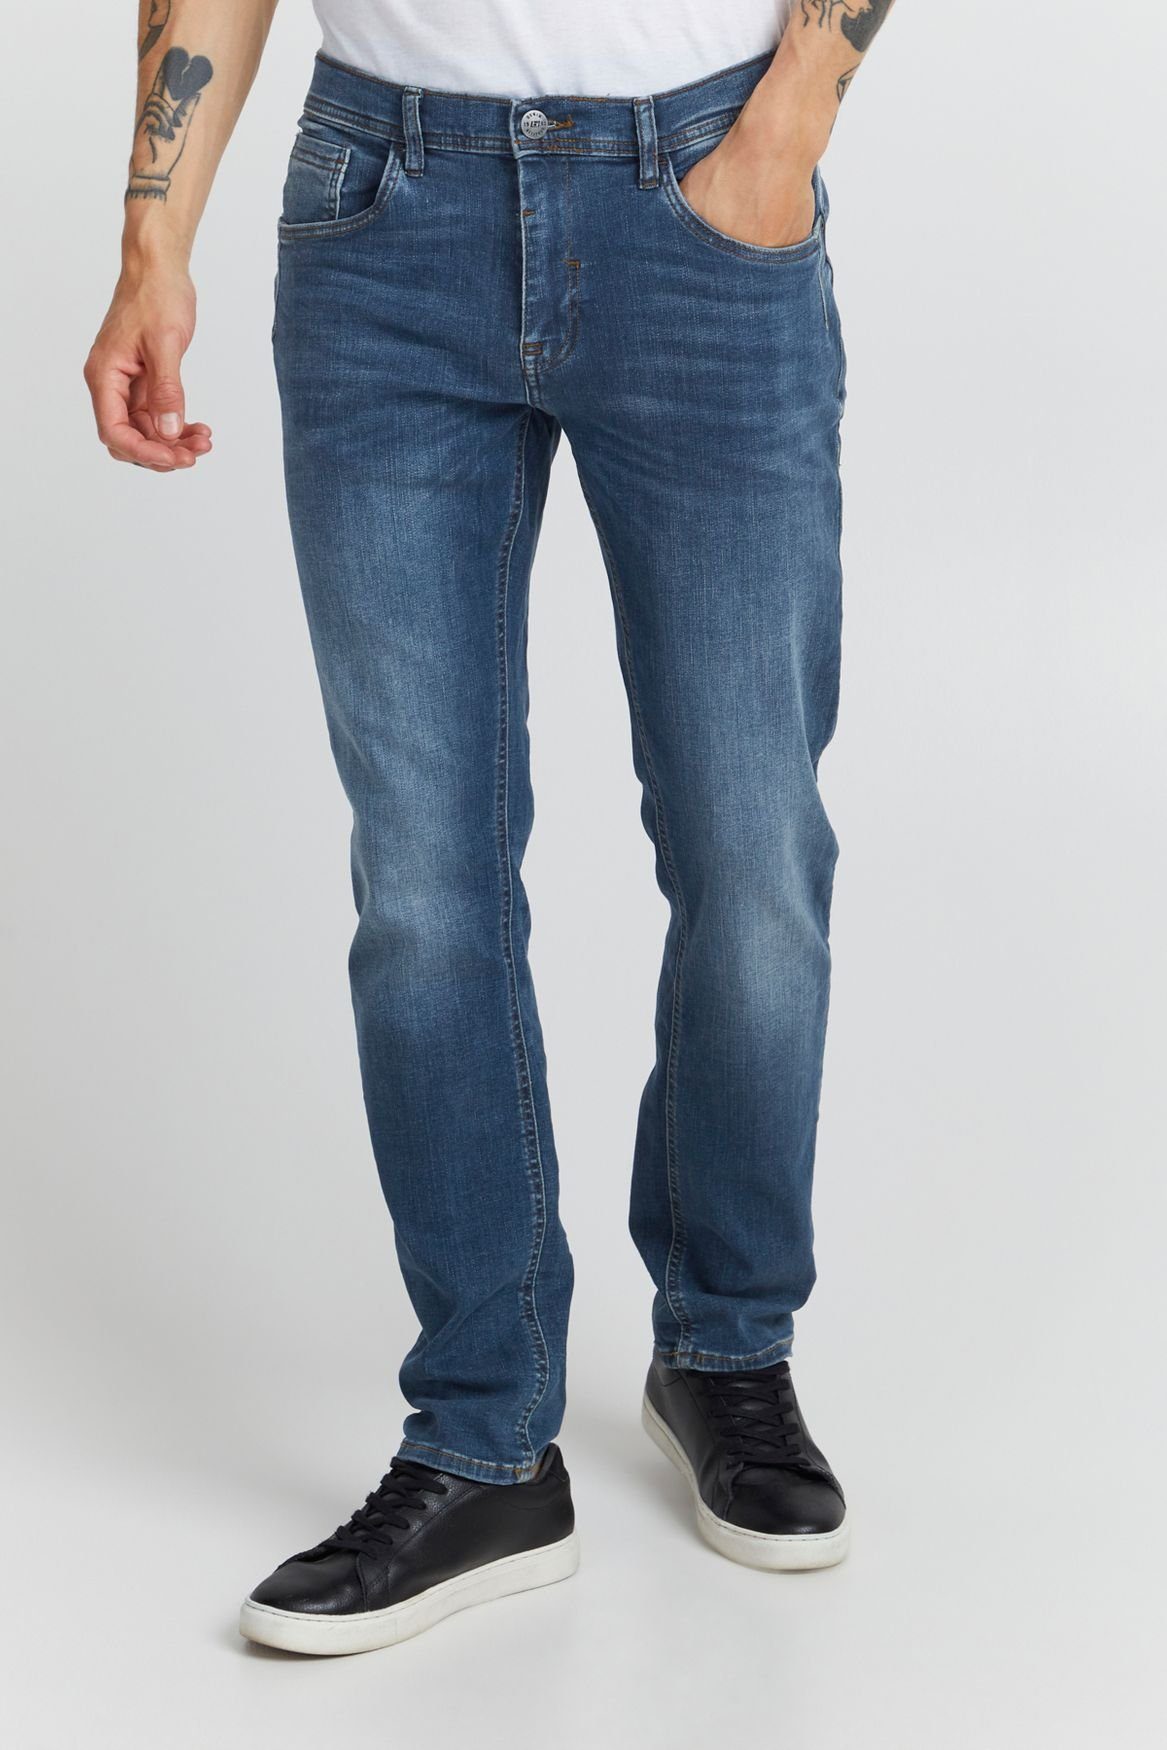 Blend Slim-fit-Jeans Slim Fit Jeans Basic Denim Hose Stoned Washed TWISTER FIT 5196 in Blau